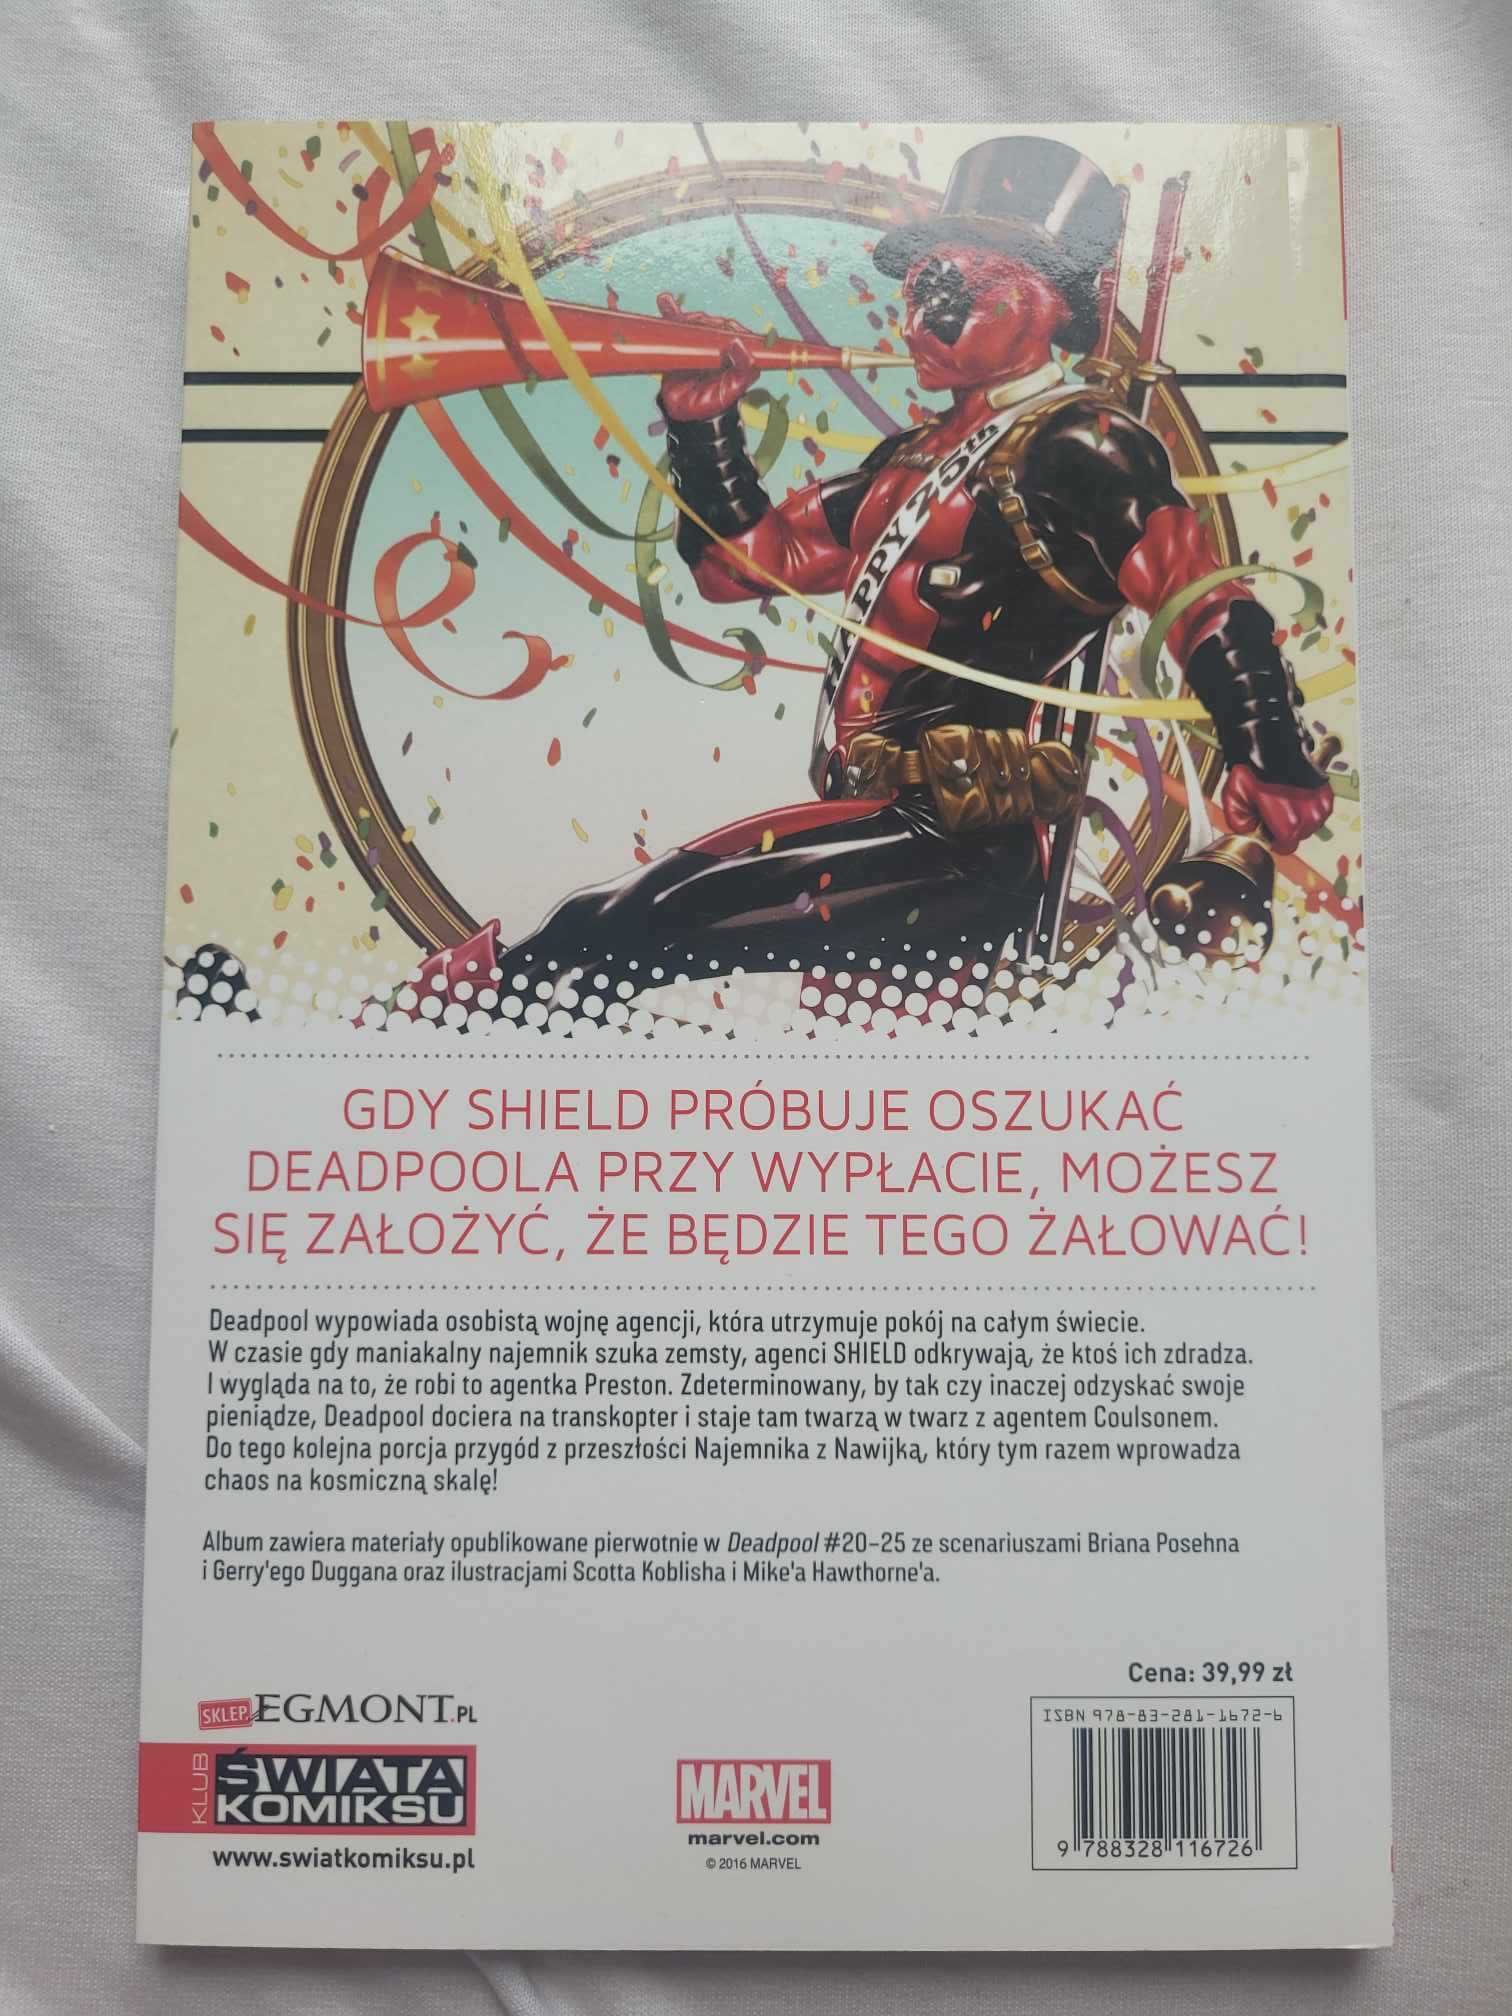 Deadpool - deadpool kontra shield